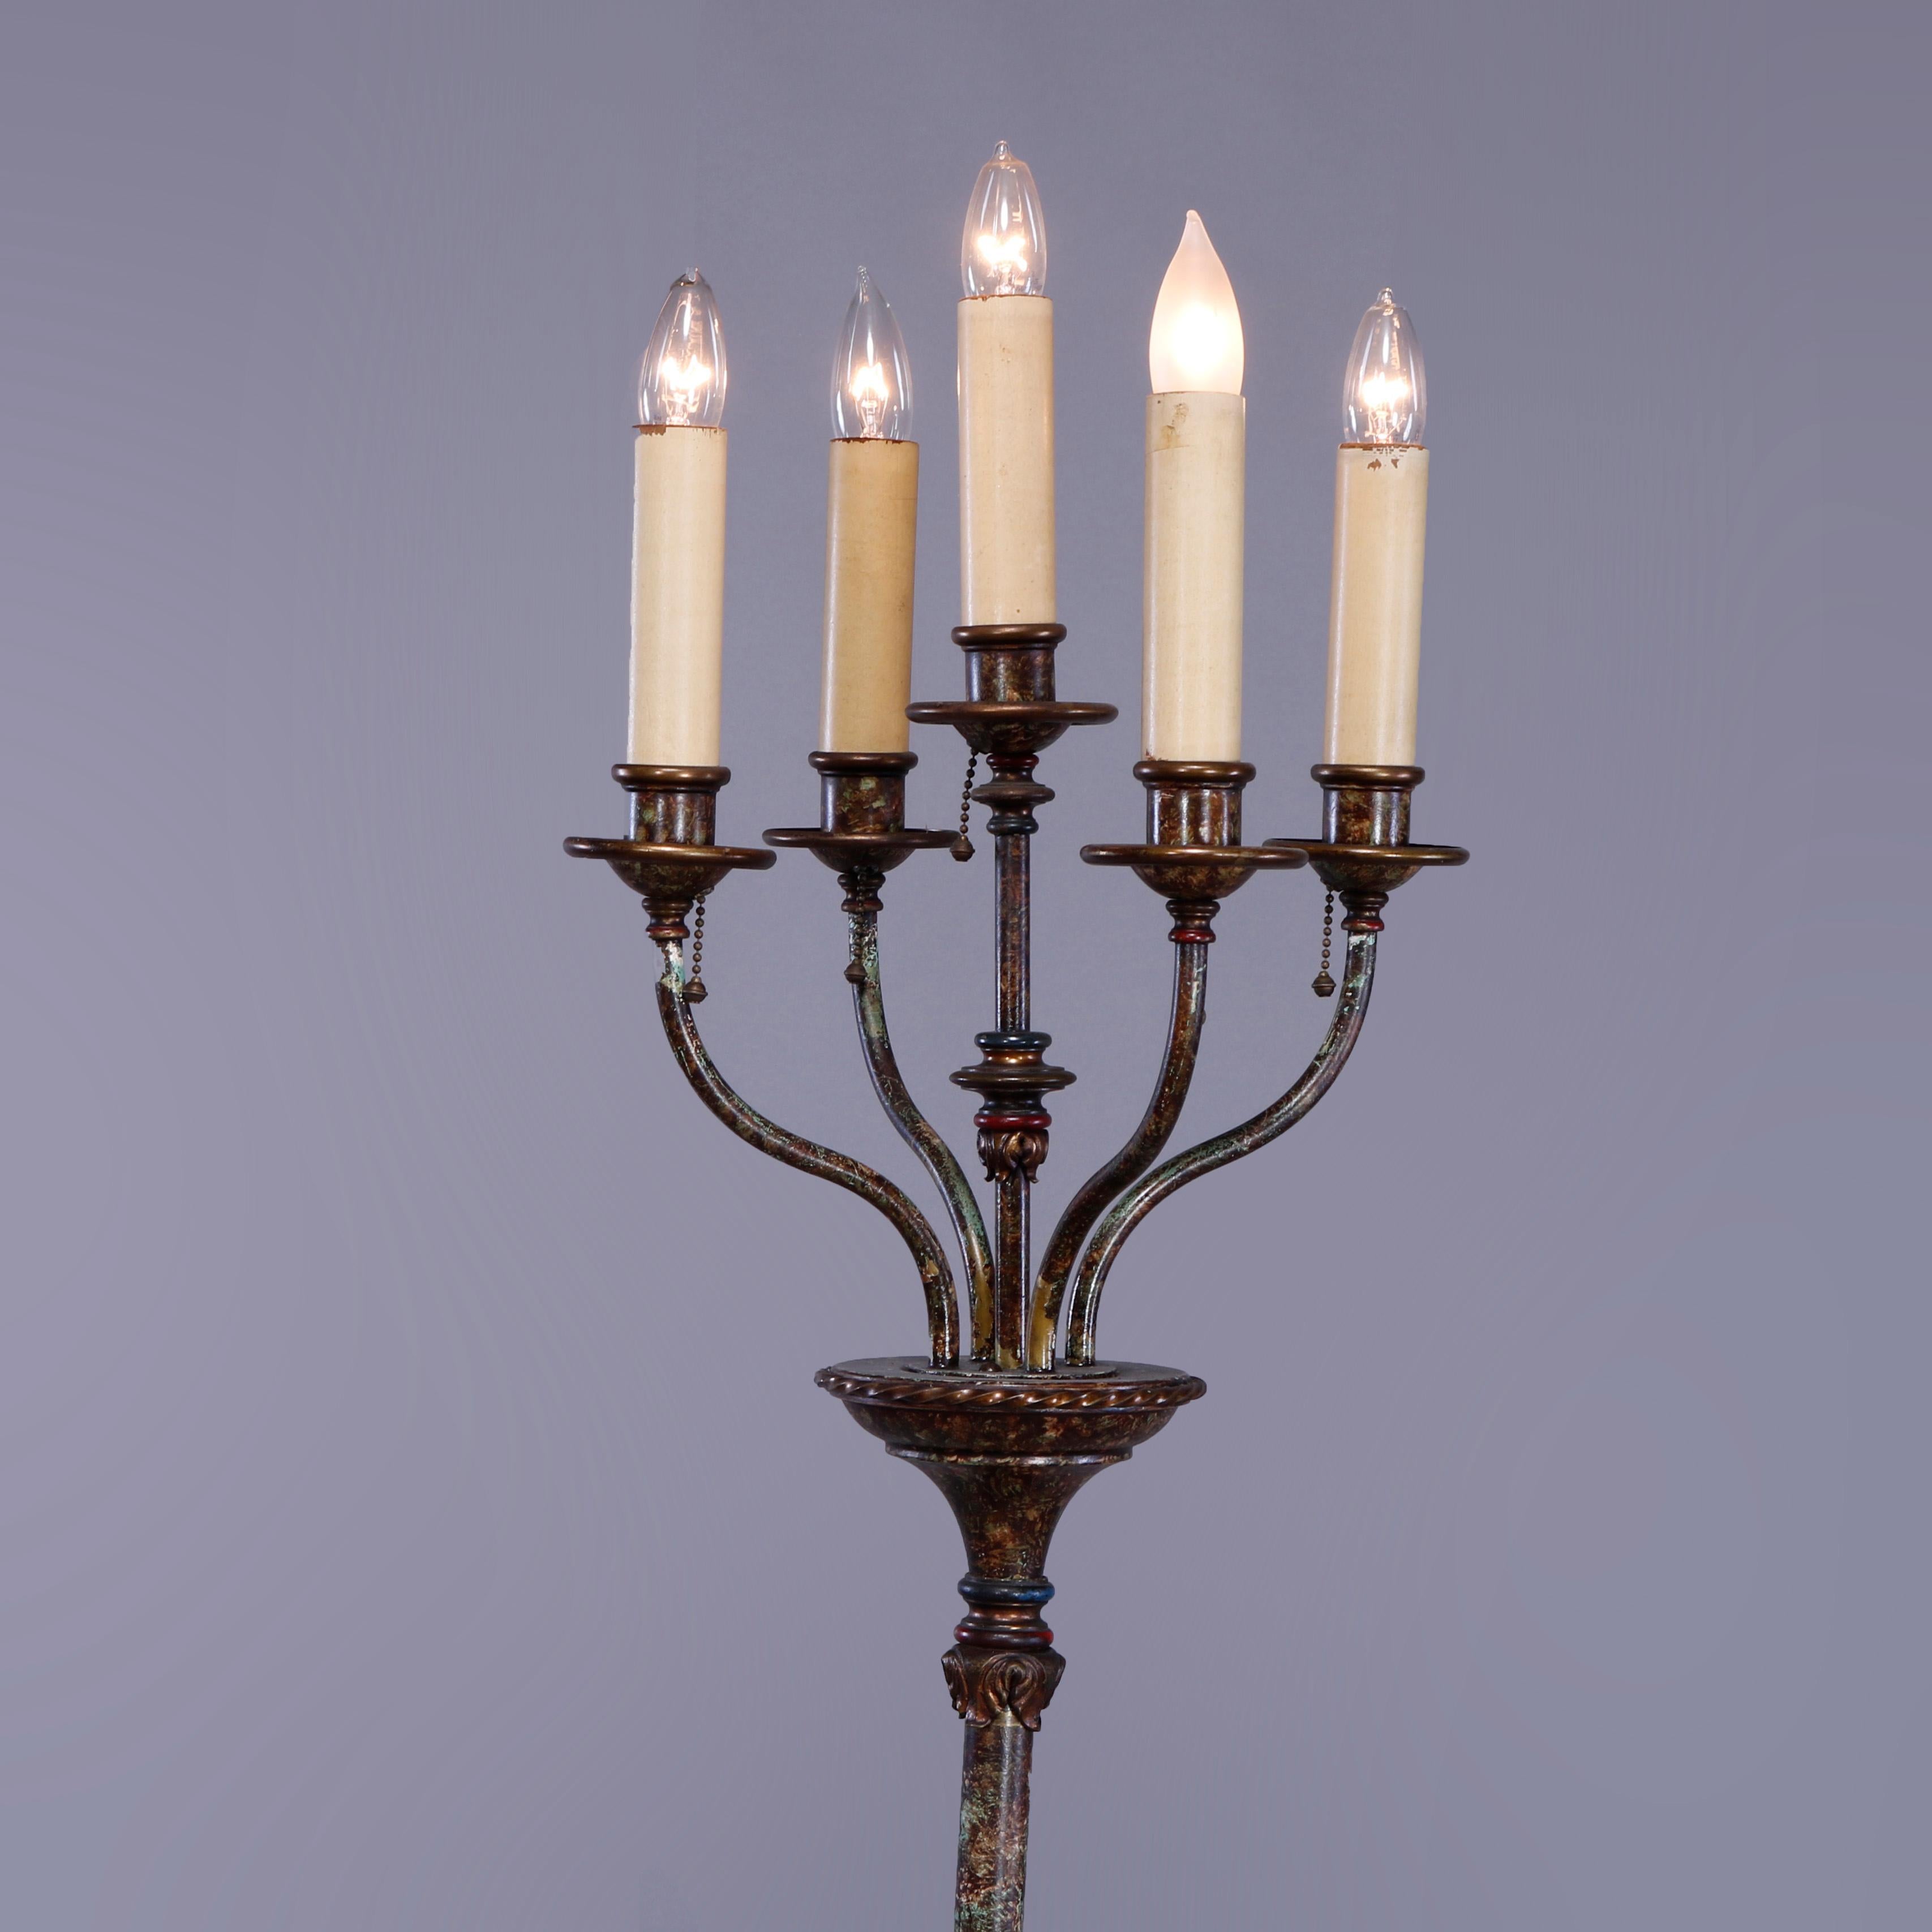 American Antique Bronze & Wrought Iron Five-Light Candelabra Floor Lamp, c1920